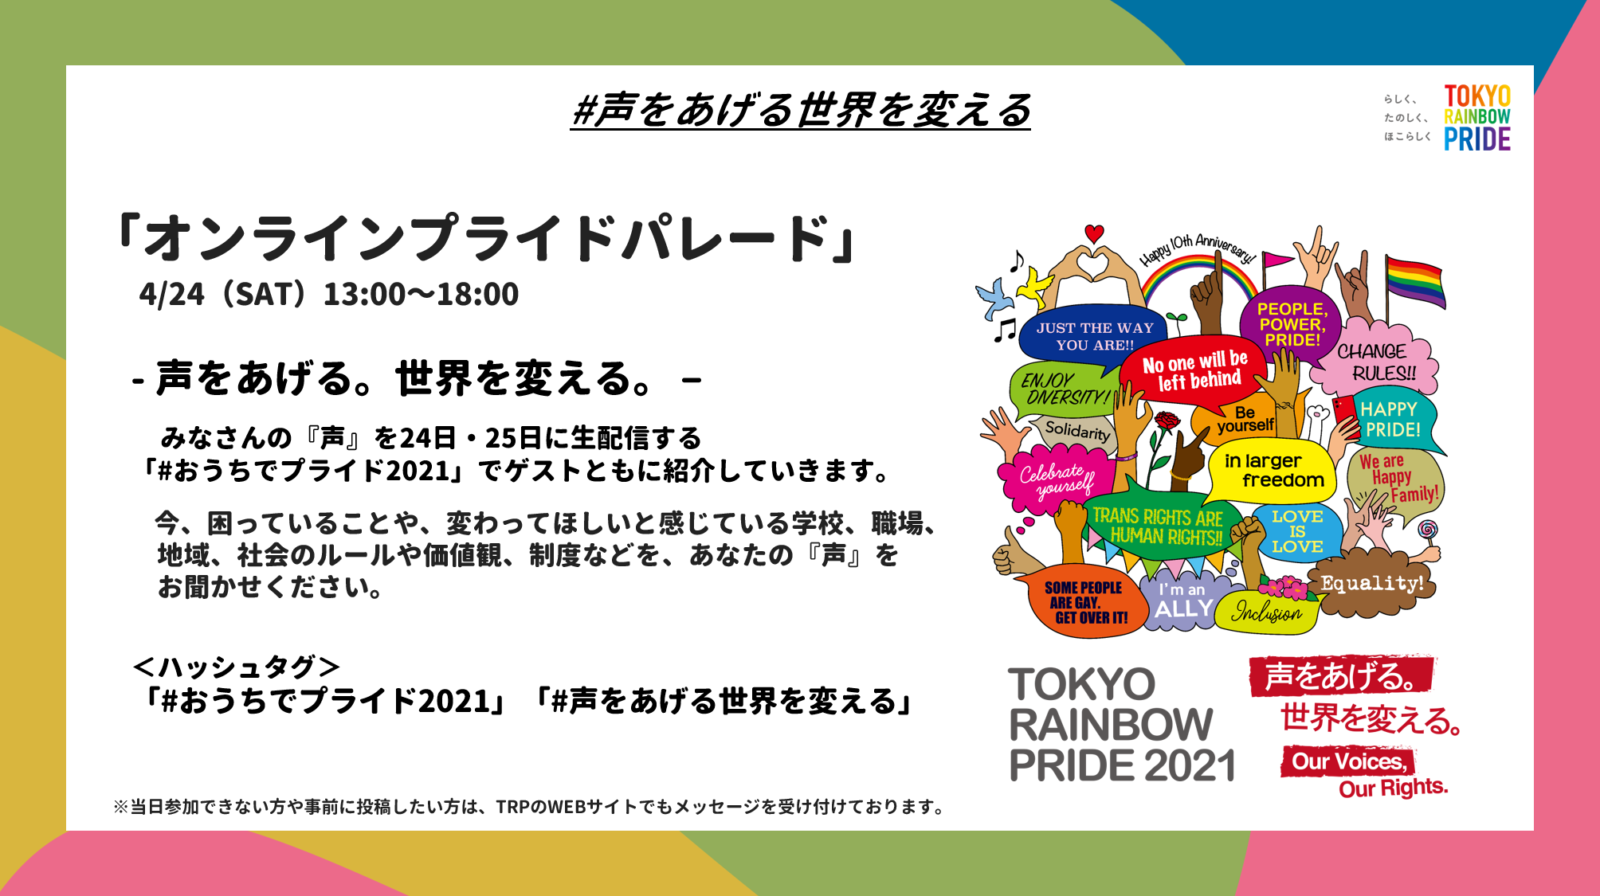 東京レインボープライド2021「#おうちでプライド2021」「#声をあげる世界を変える」メッセージ募集のお知らせ